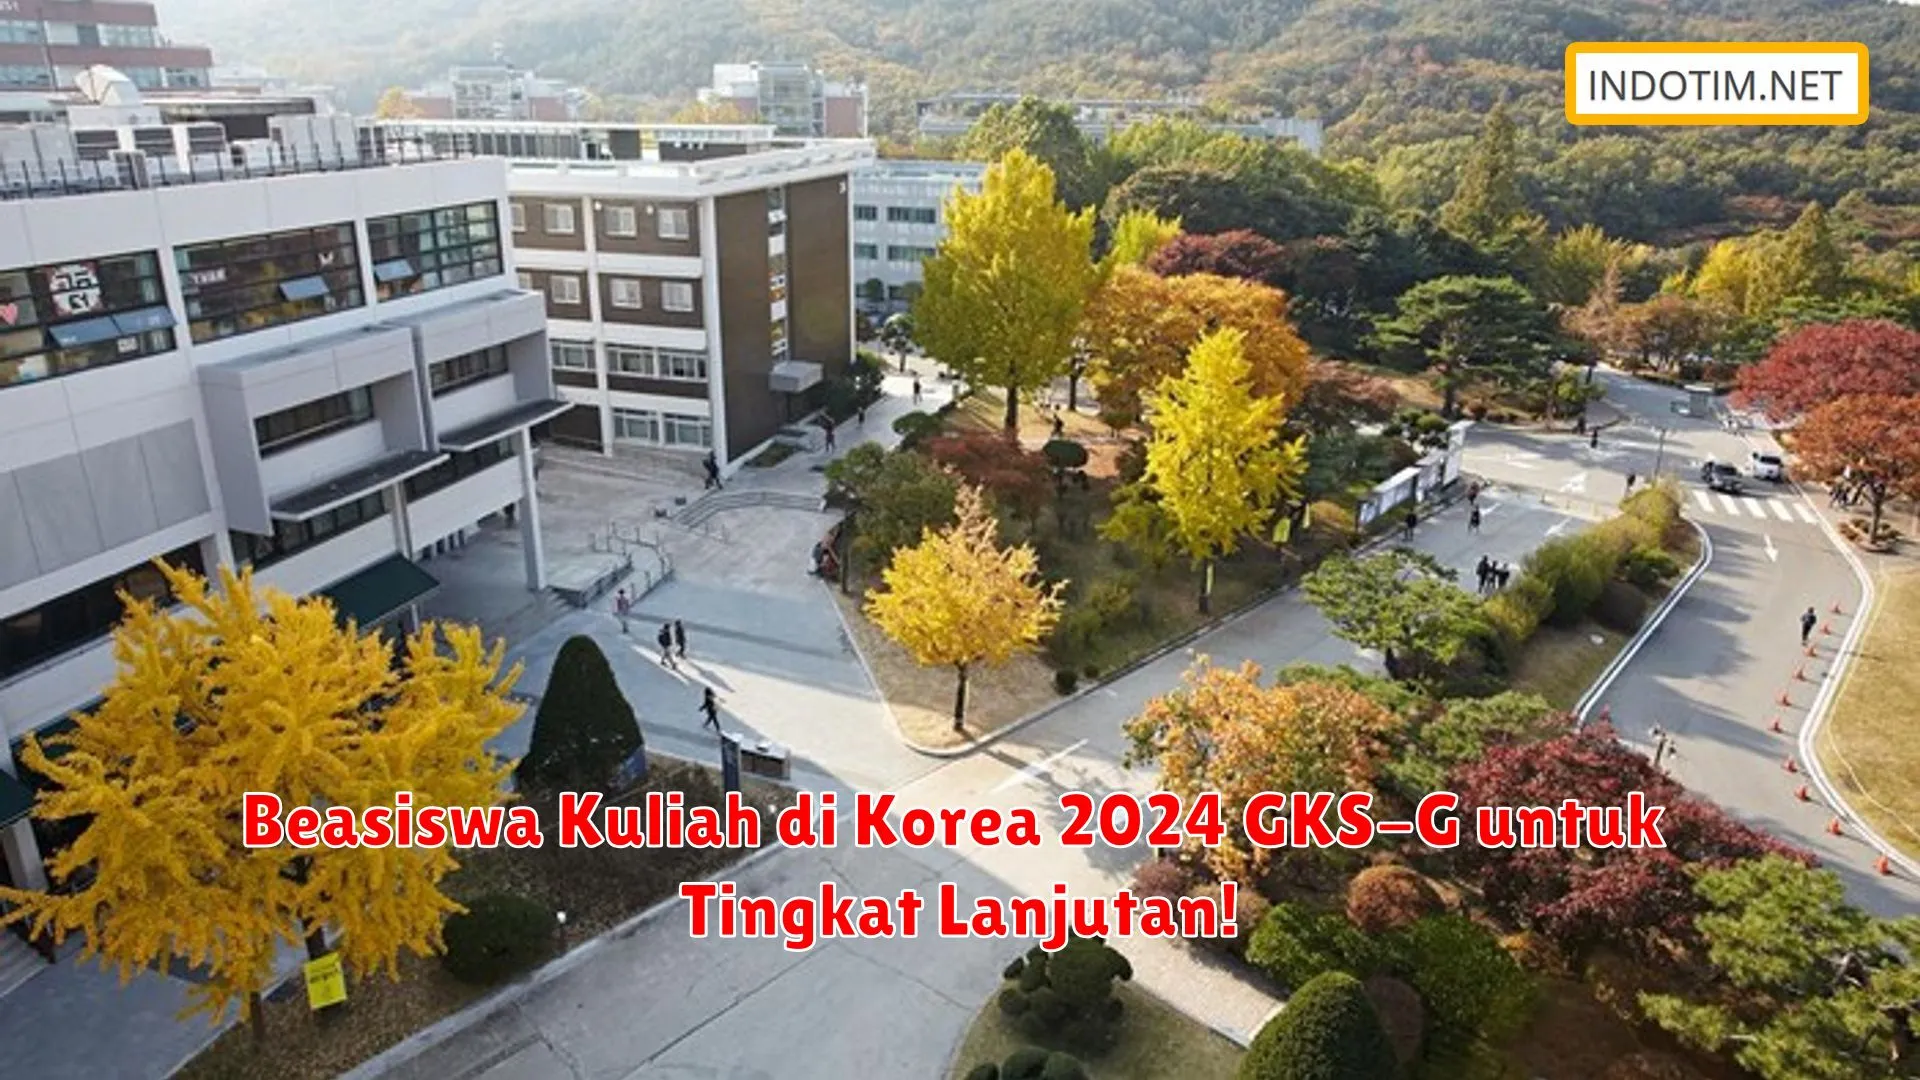 Beasiswa Kuliah di Korea 2024 GKS-G untuk Tingkat Lanjutan!